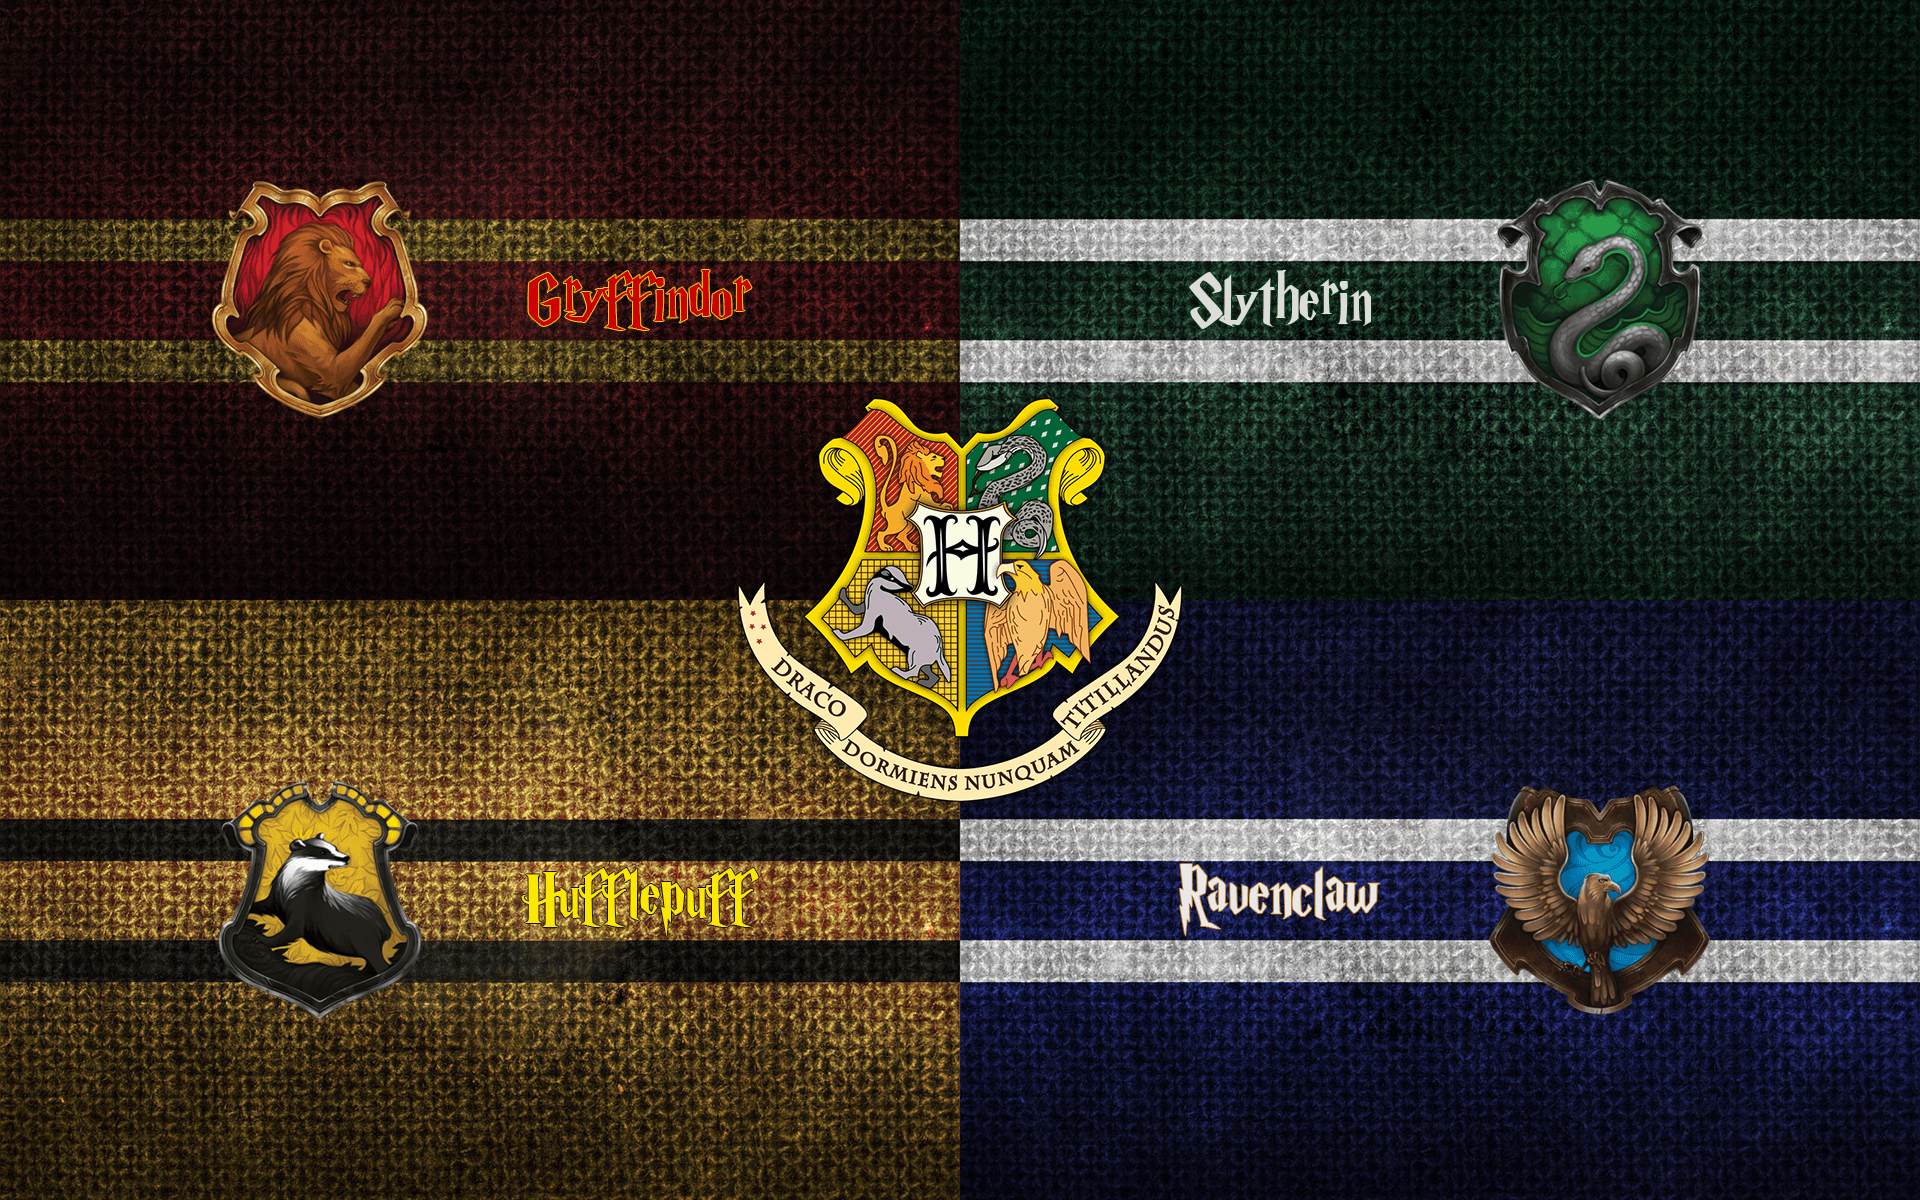 Harry Potter Gryffindor Crest Wallpaper Free Harry Potter Gryffindor Crest Background. Slytherin wallpaper, Harry potter gryffindor, Gryffindor crest